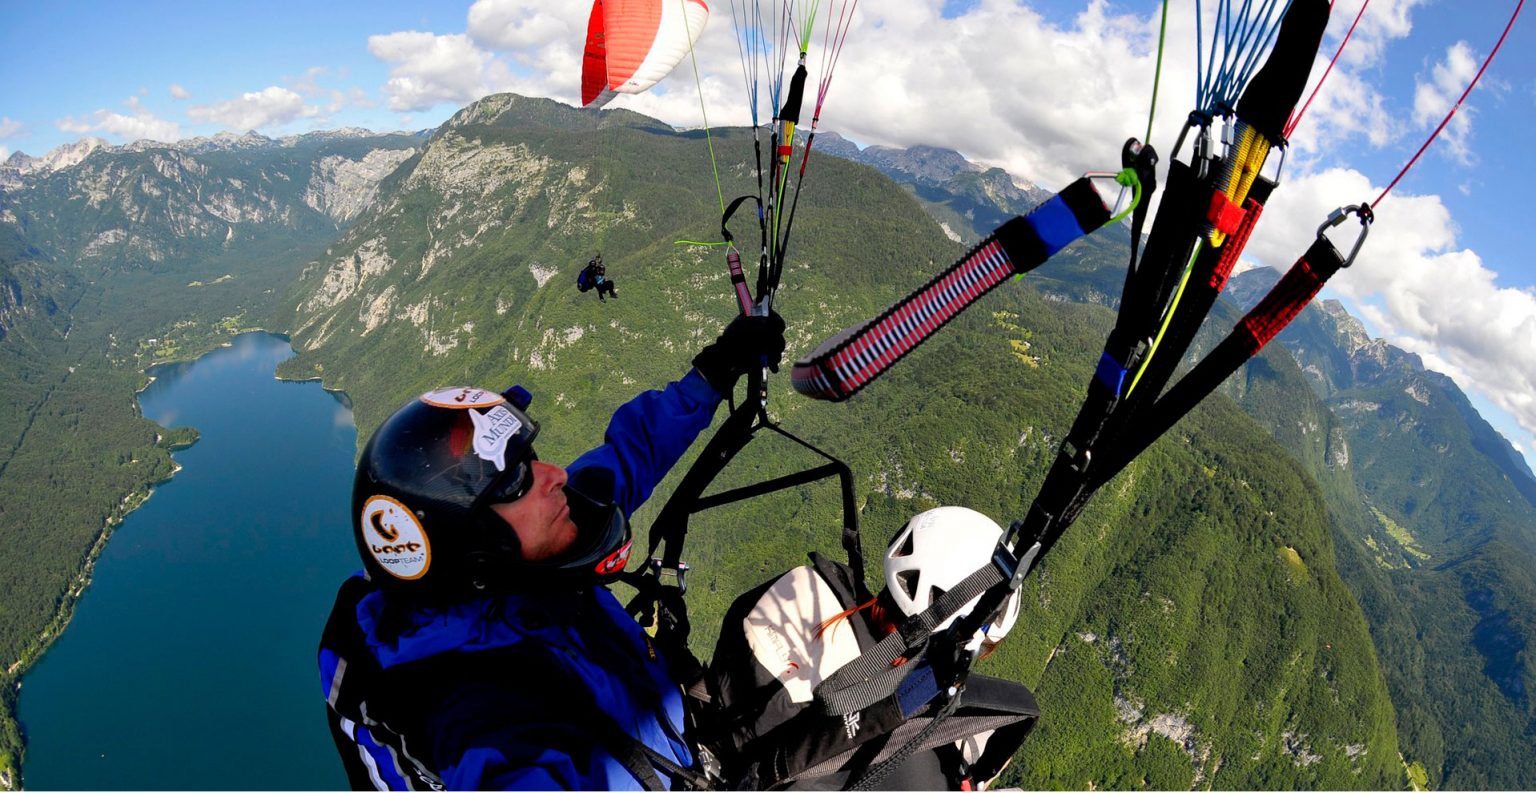 LoopTeam paraglide